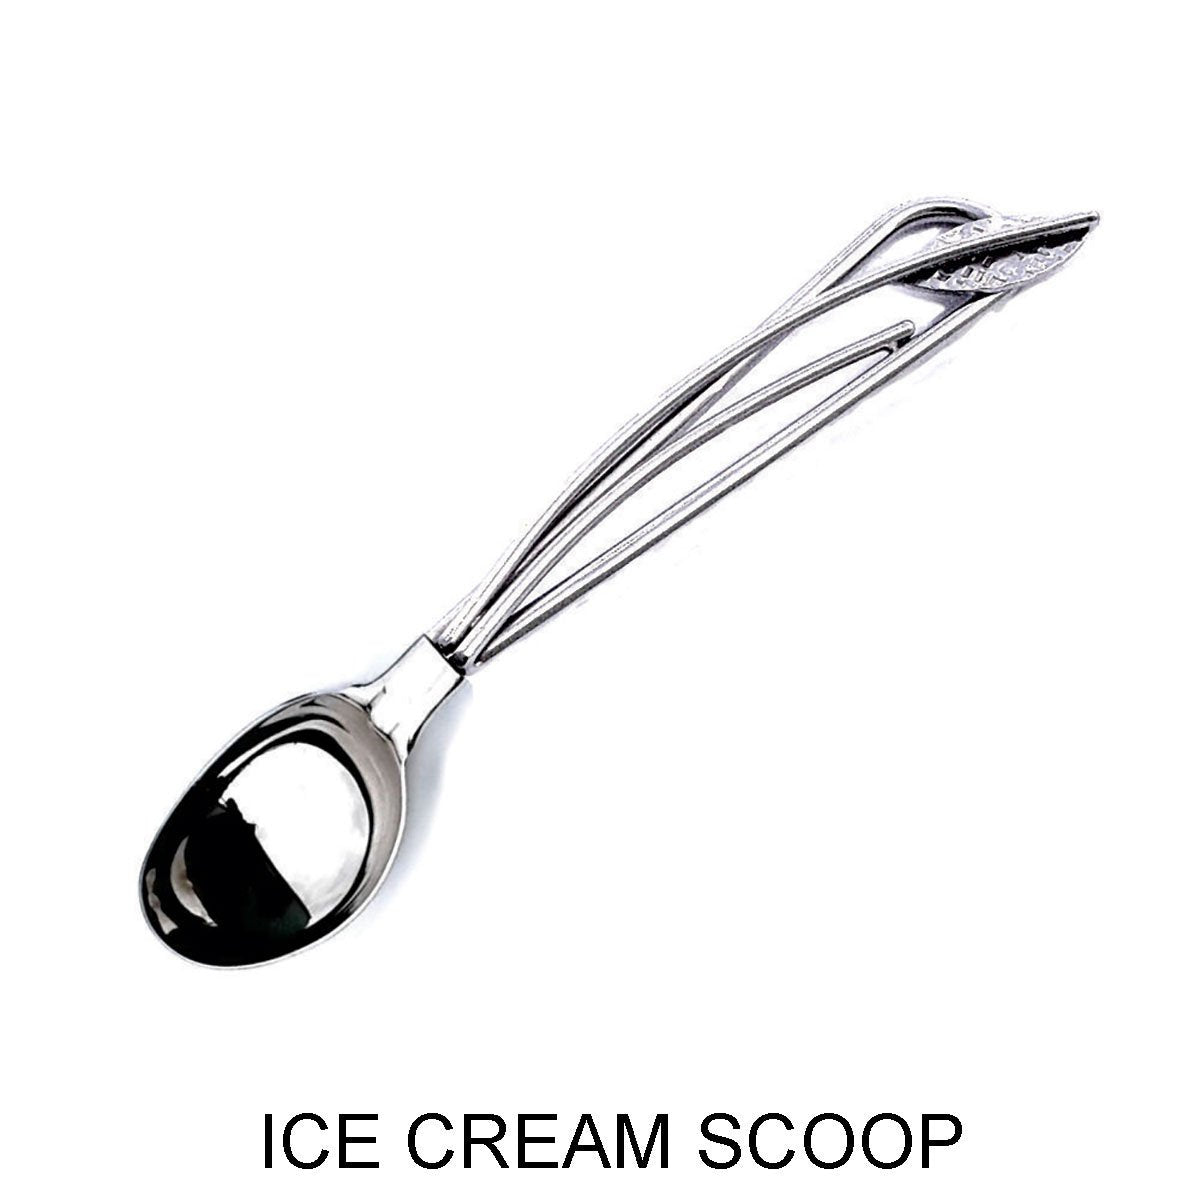 STEEL ICE CREAM SCOOP – Different Drummer's Kitchen, Inc.